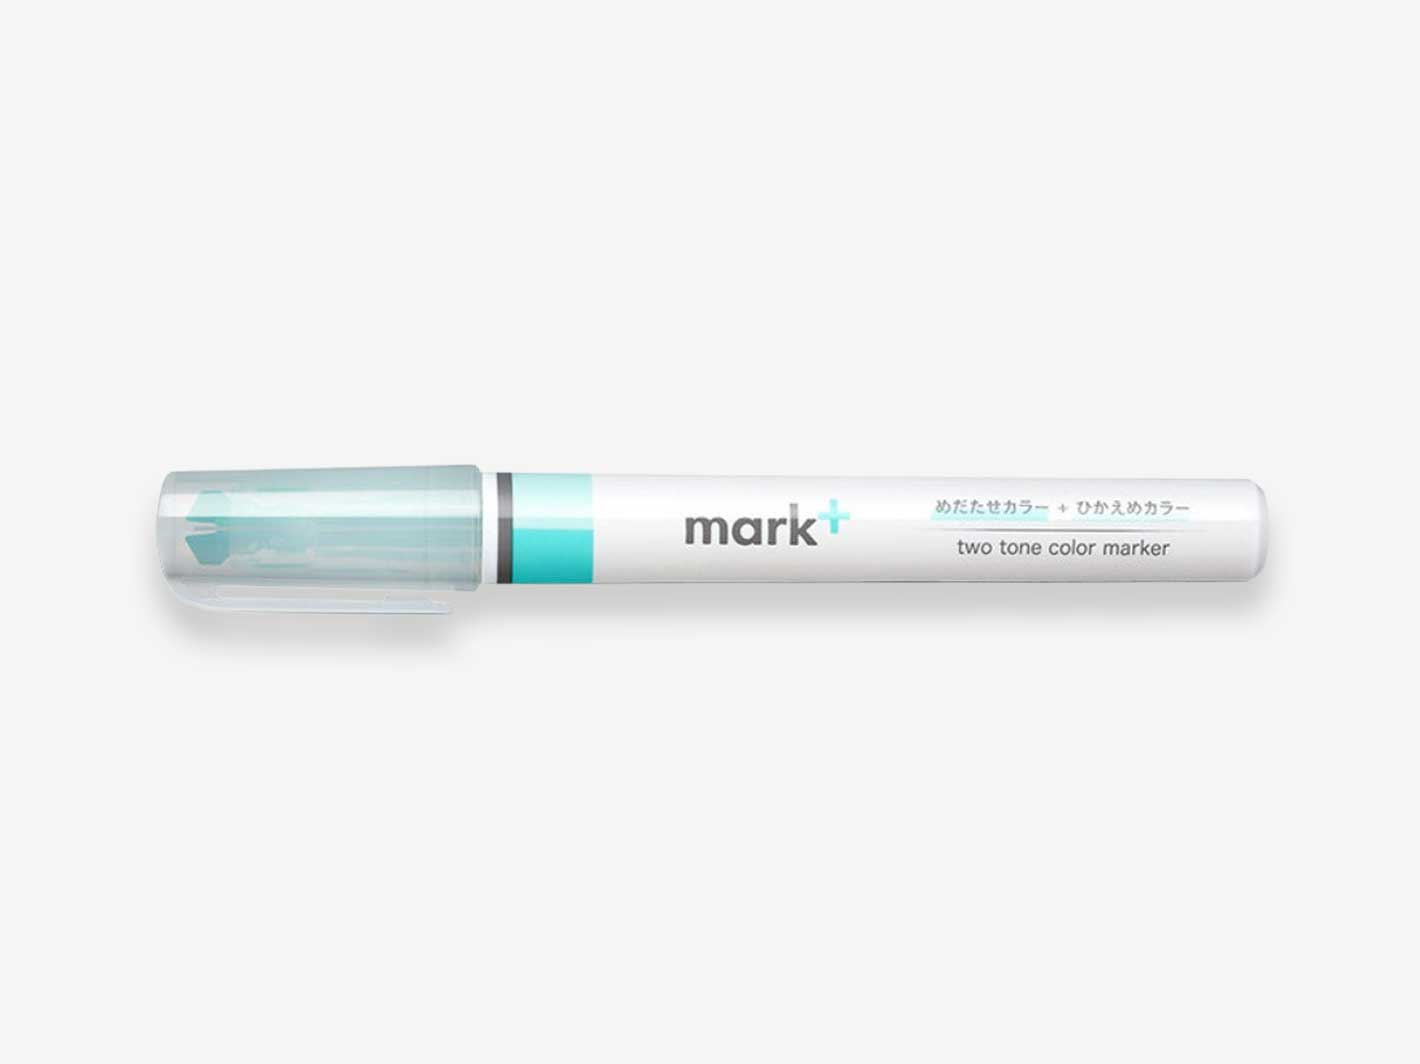 Mark+ 2 Tone Color Marking Pen - Green